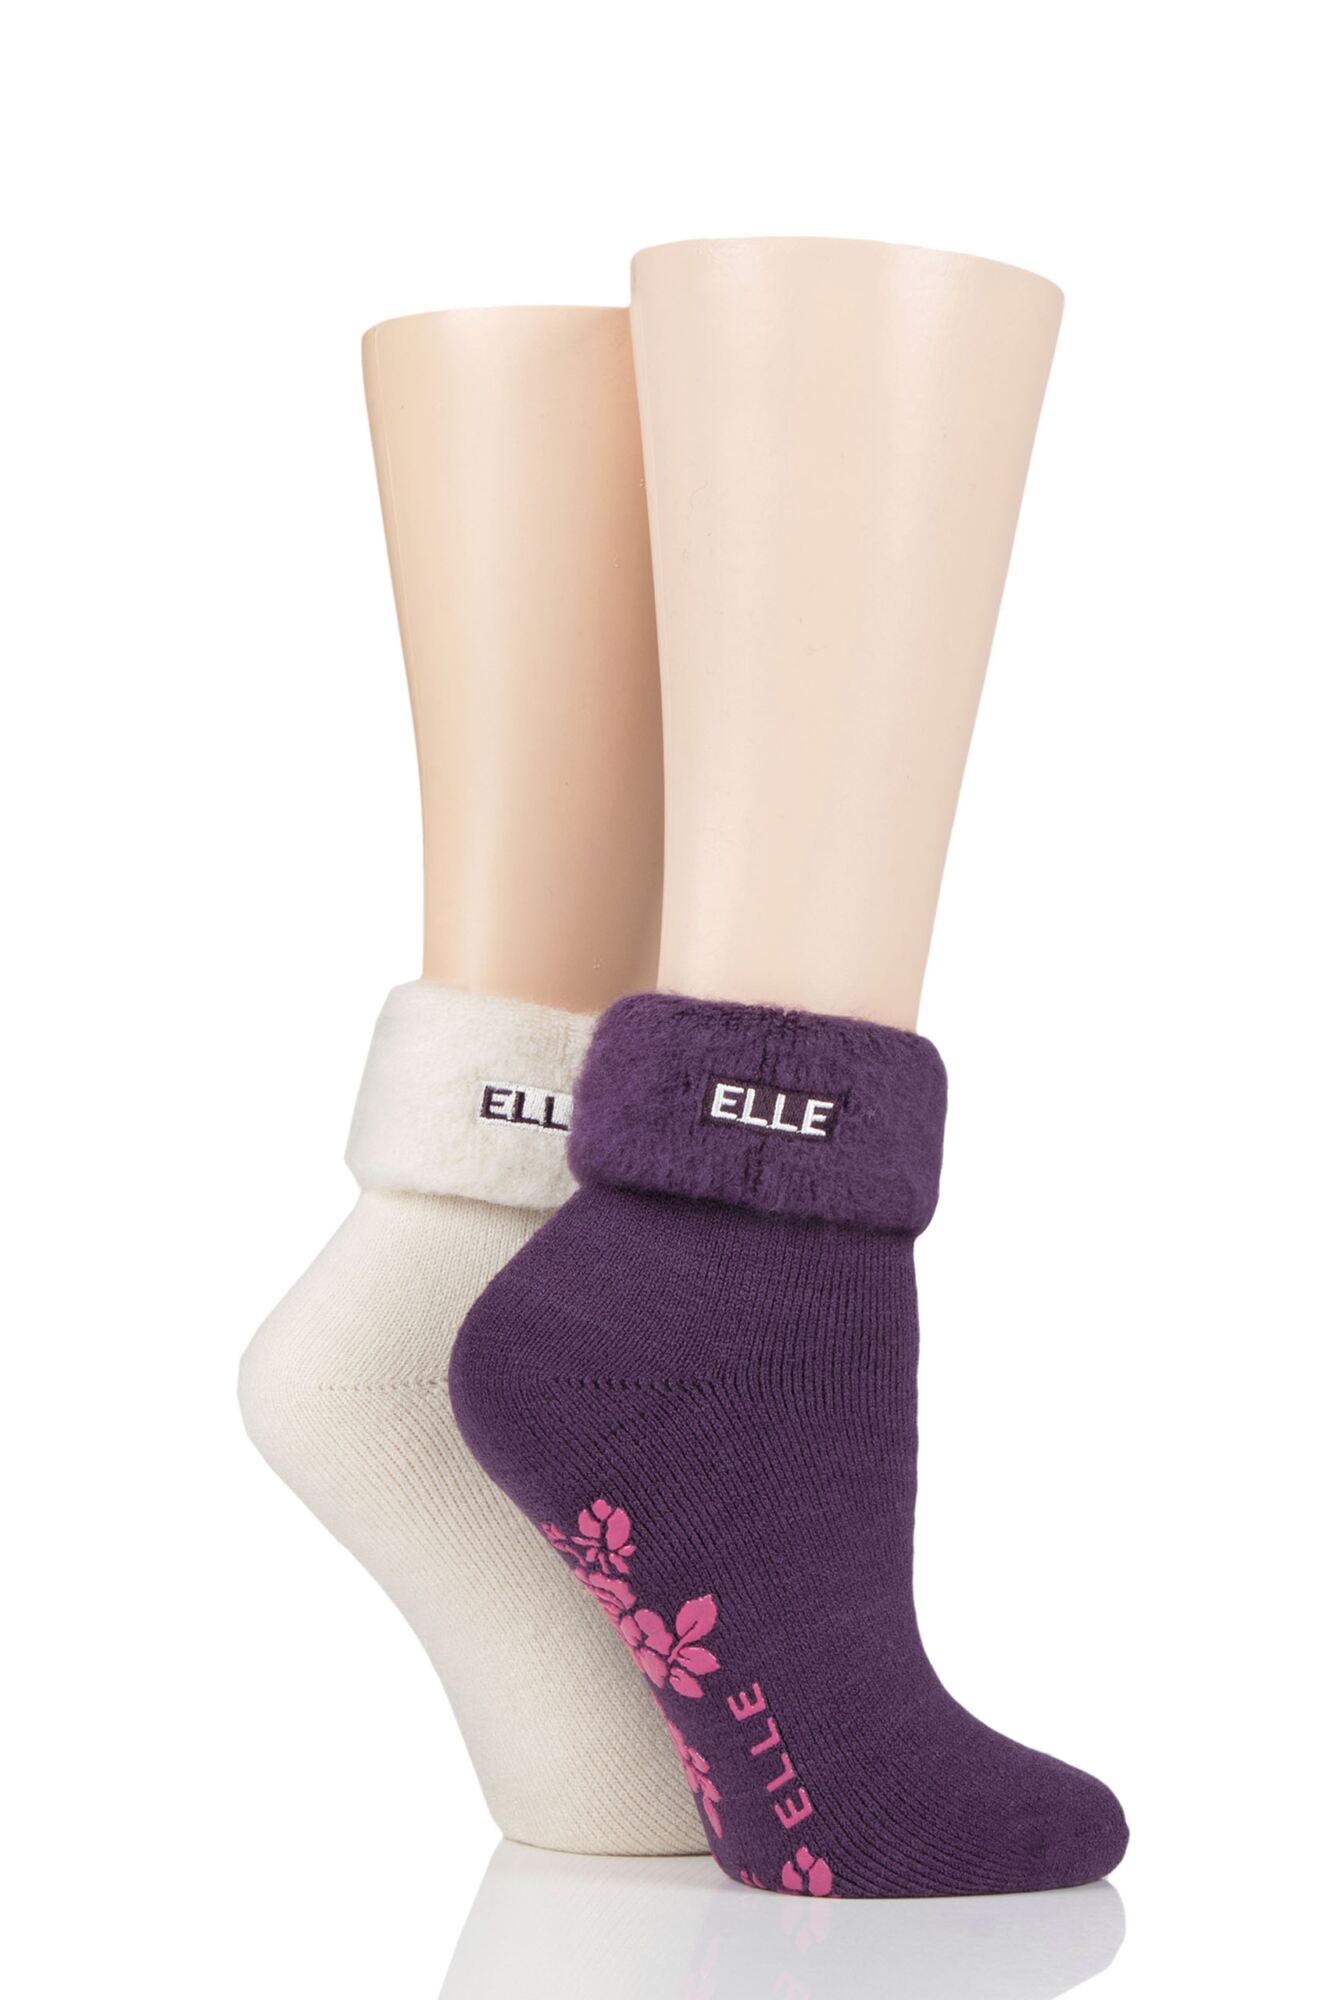 2 Pair Thermal Bed and Slipper Socks Ladies - Elle